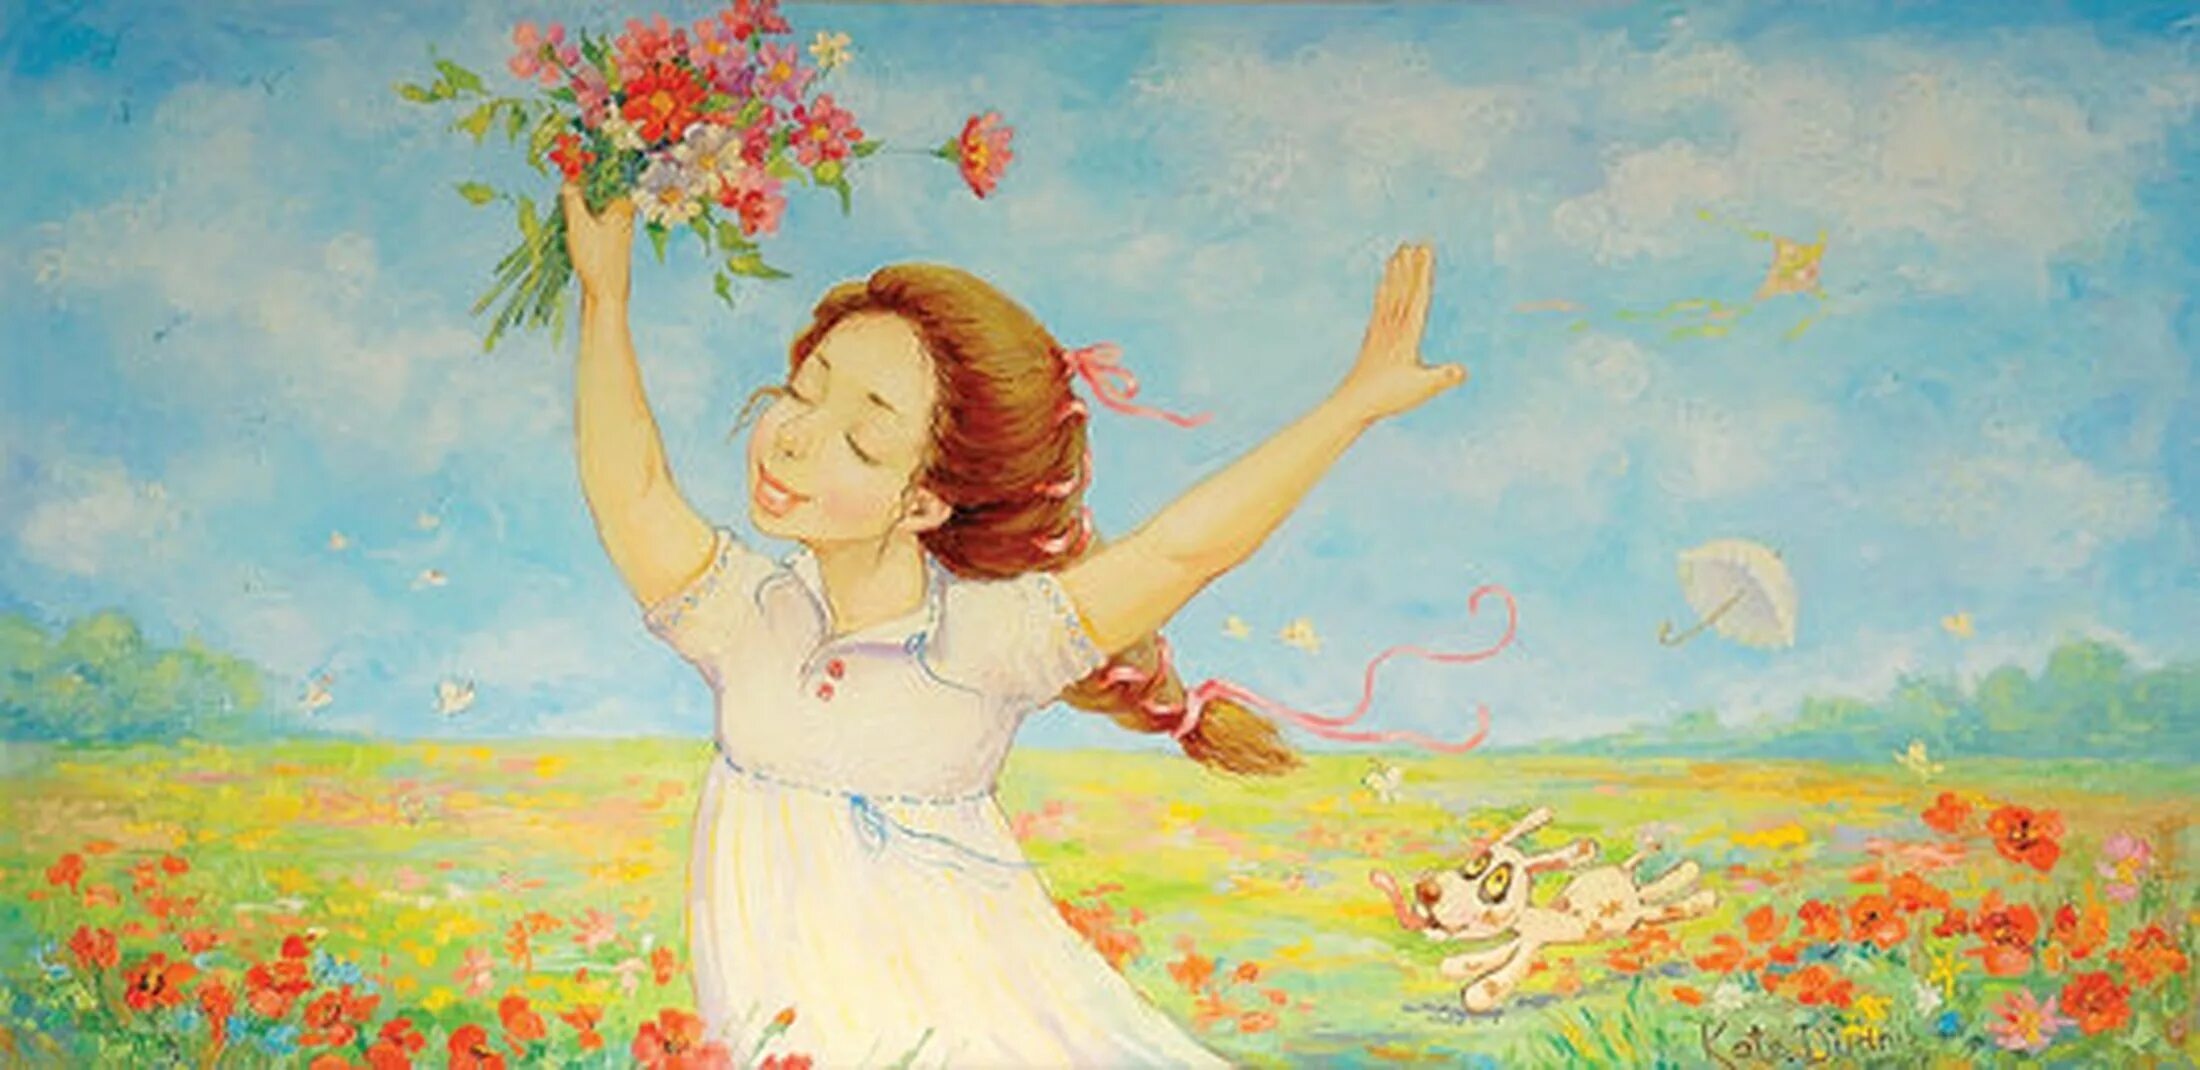 Песни радости я пою. Картины художницы Екатерины Дудник к мечте. Милые картины художницы Екатерины Дудник. Счастье живопись. Радостные картины.